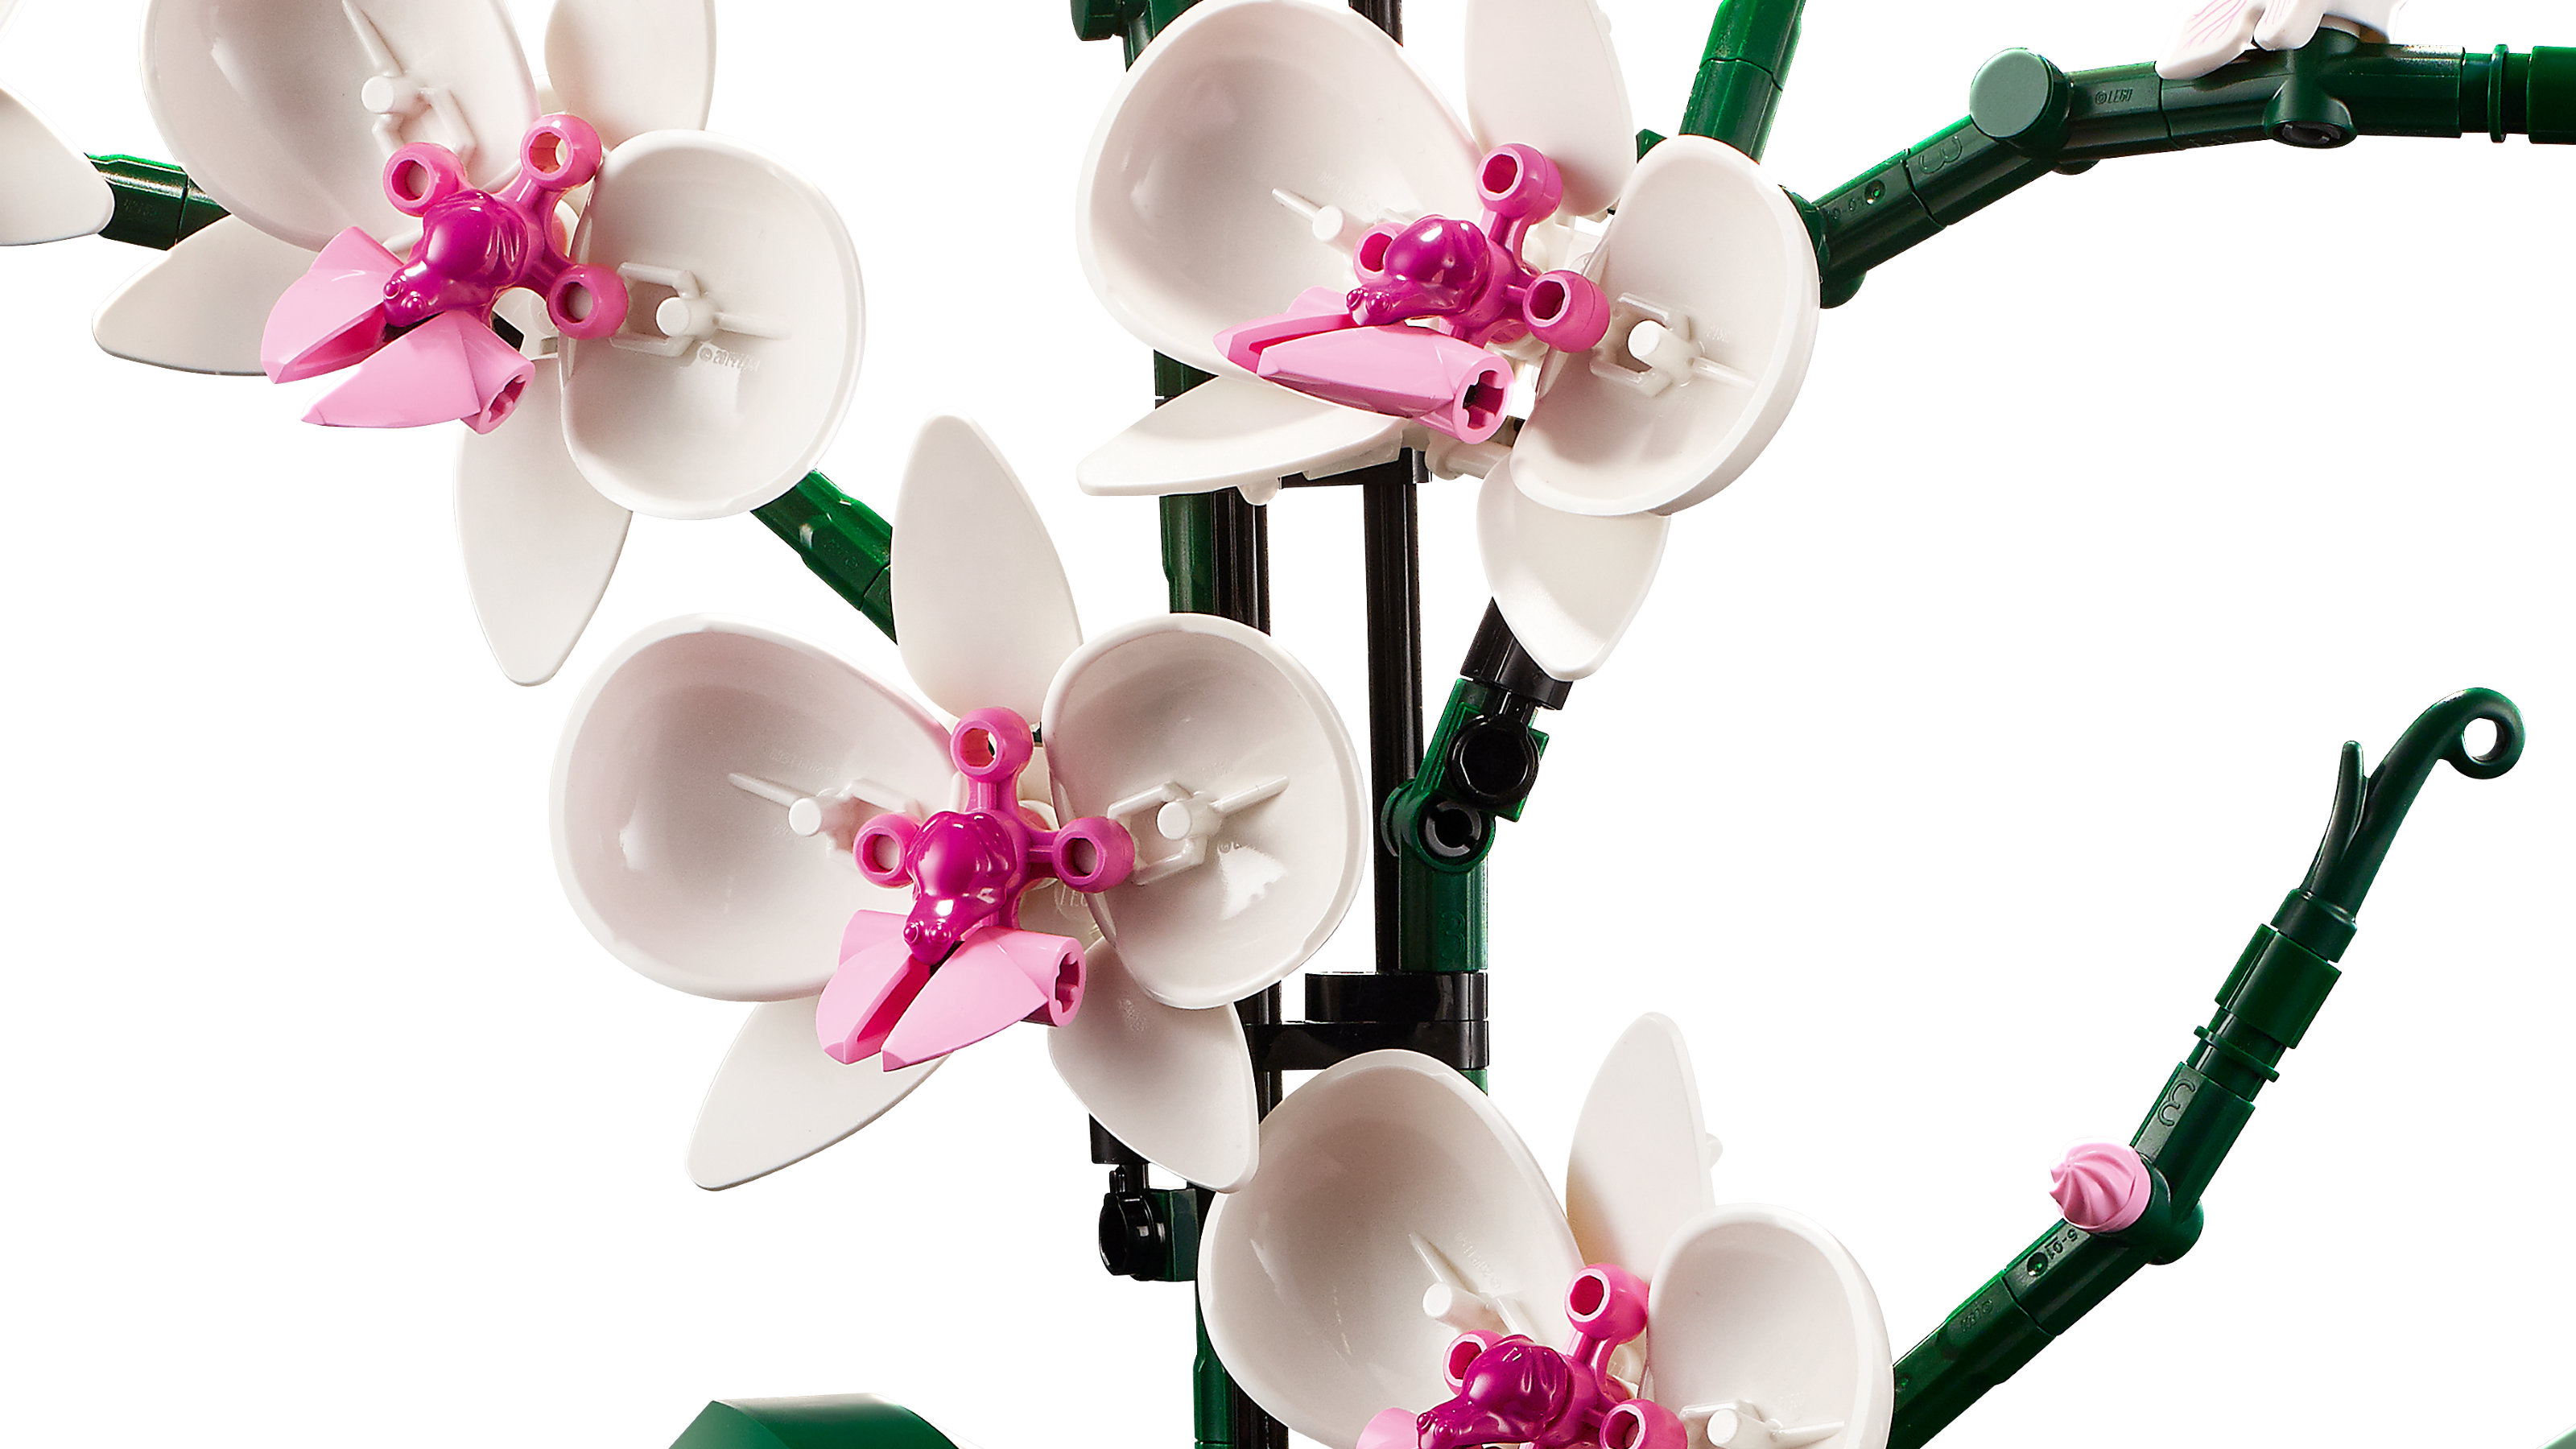 LEGO Icons 10311 L’Orchidée Plantes de Fleurs Artificielles  d'Intérieur, Décoration de Maison pas cher 